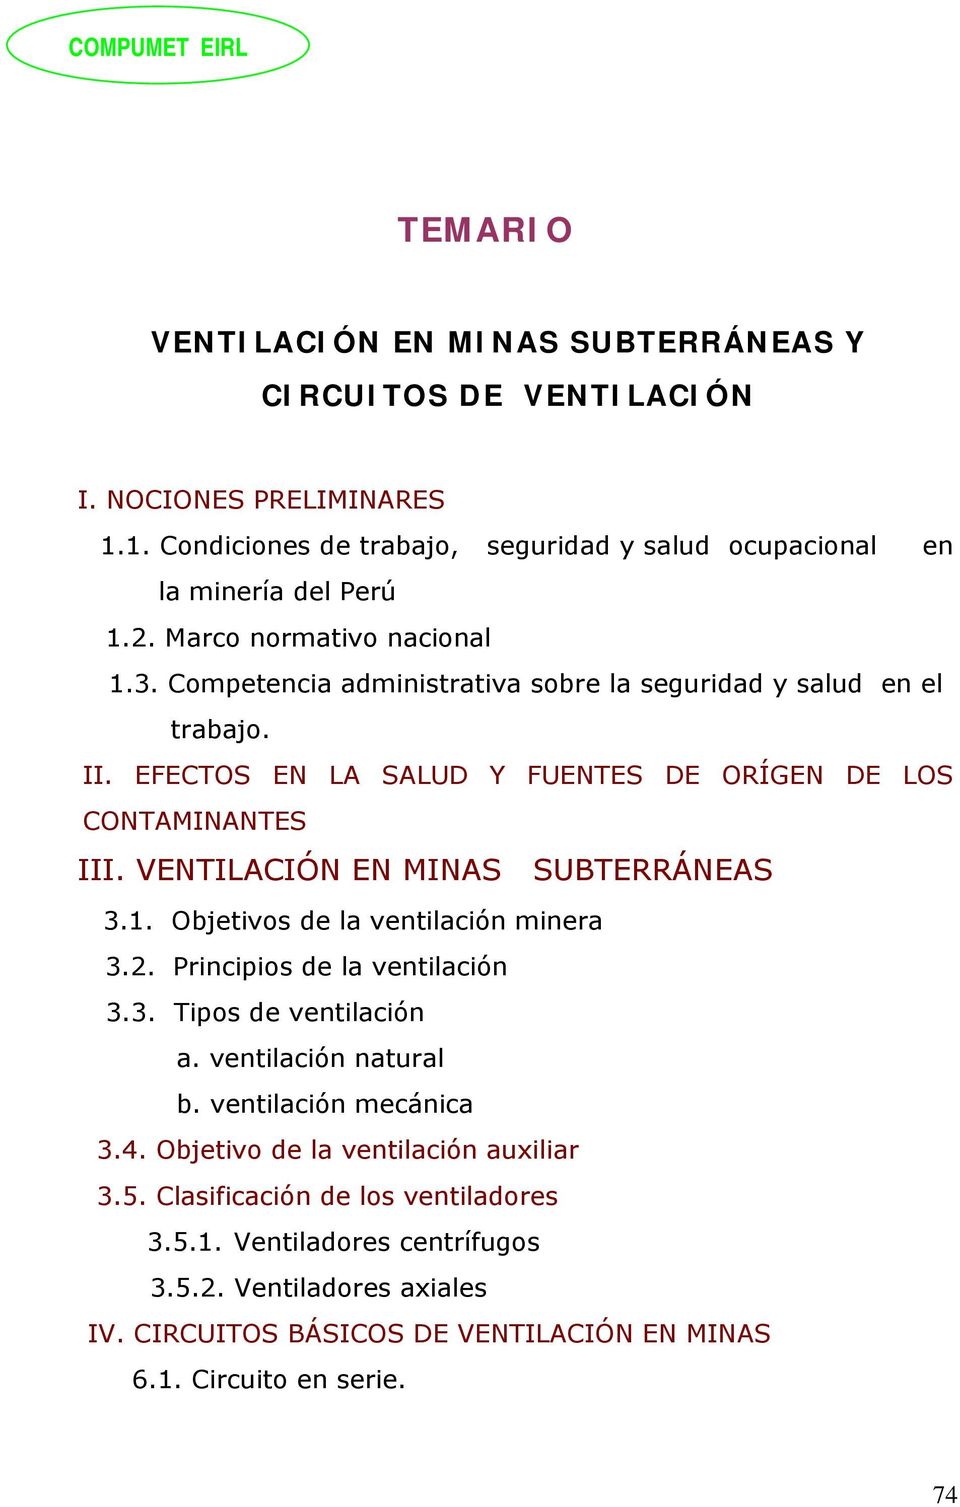 VENTILACIÓN EN MINAS SUBTERRÁNEAS 3.1. Objetivos de la ventilación minera 3.2. Principios de la ventilación 3.3. Tipos de ventilación a. ventilación natural b. ventilación mecánica 3.4.